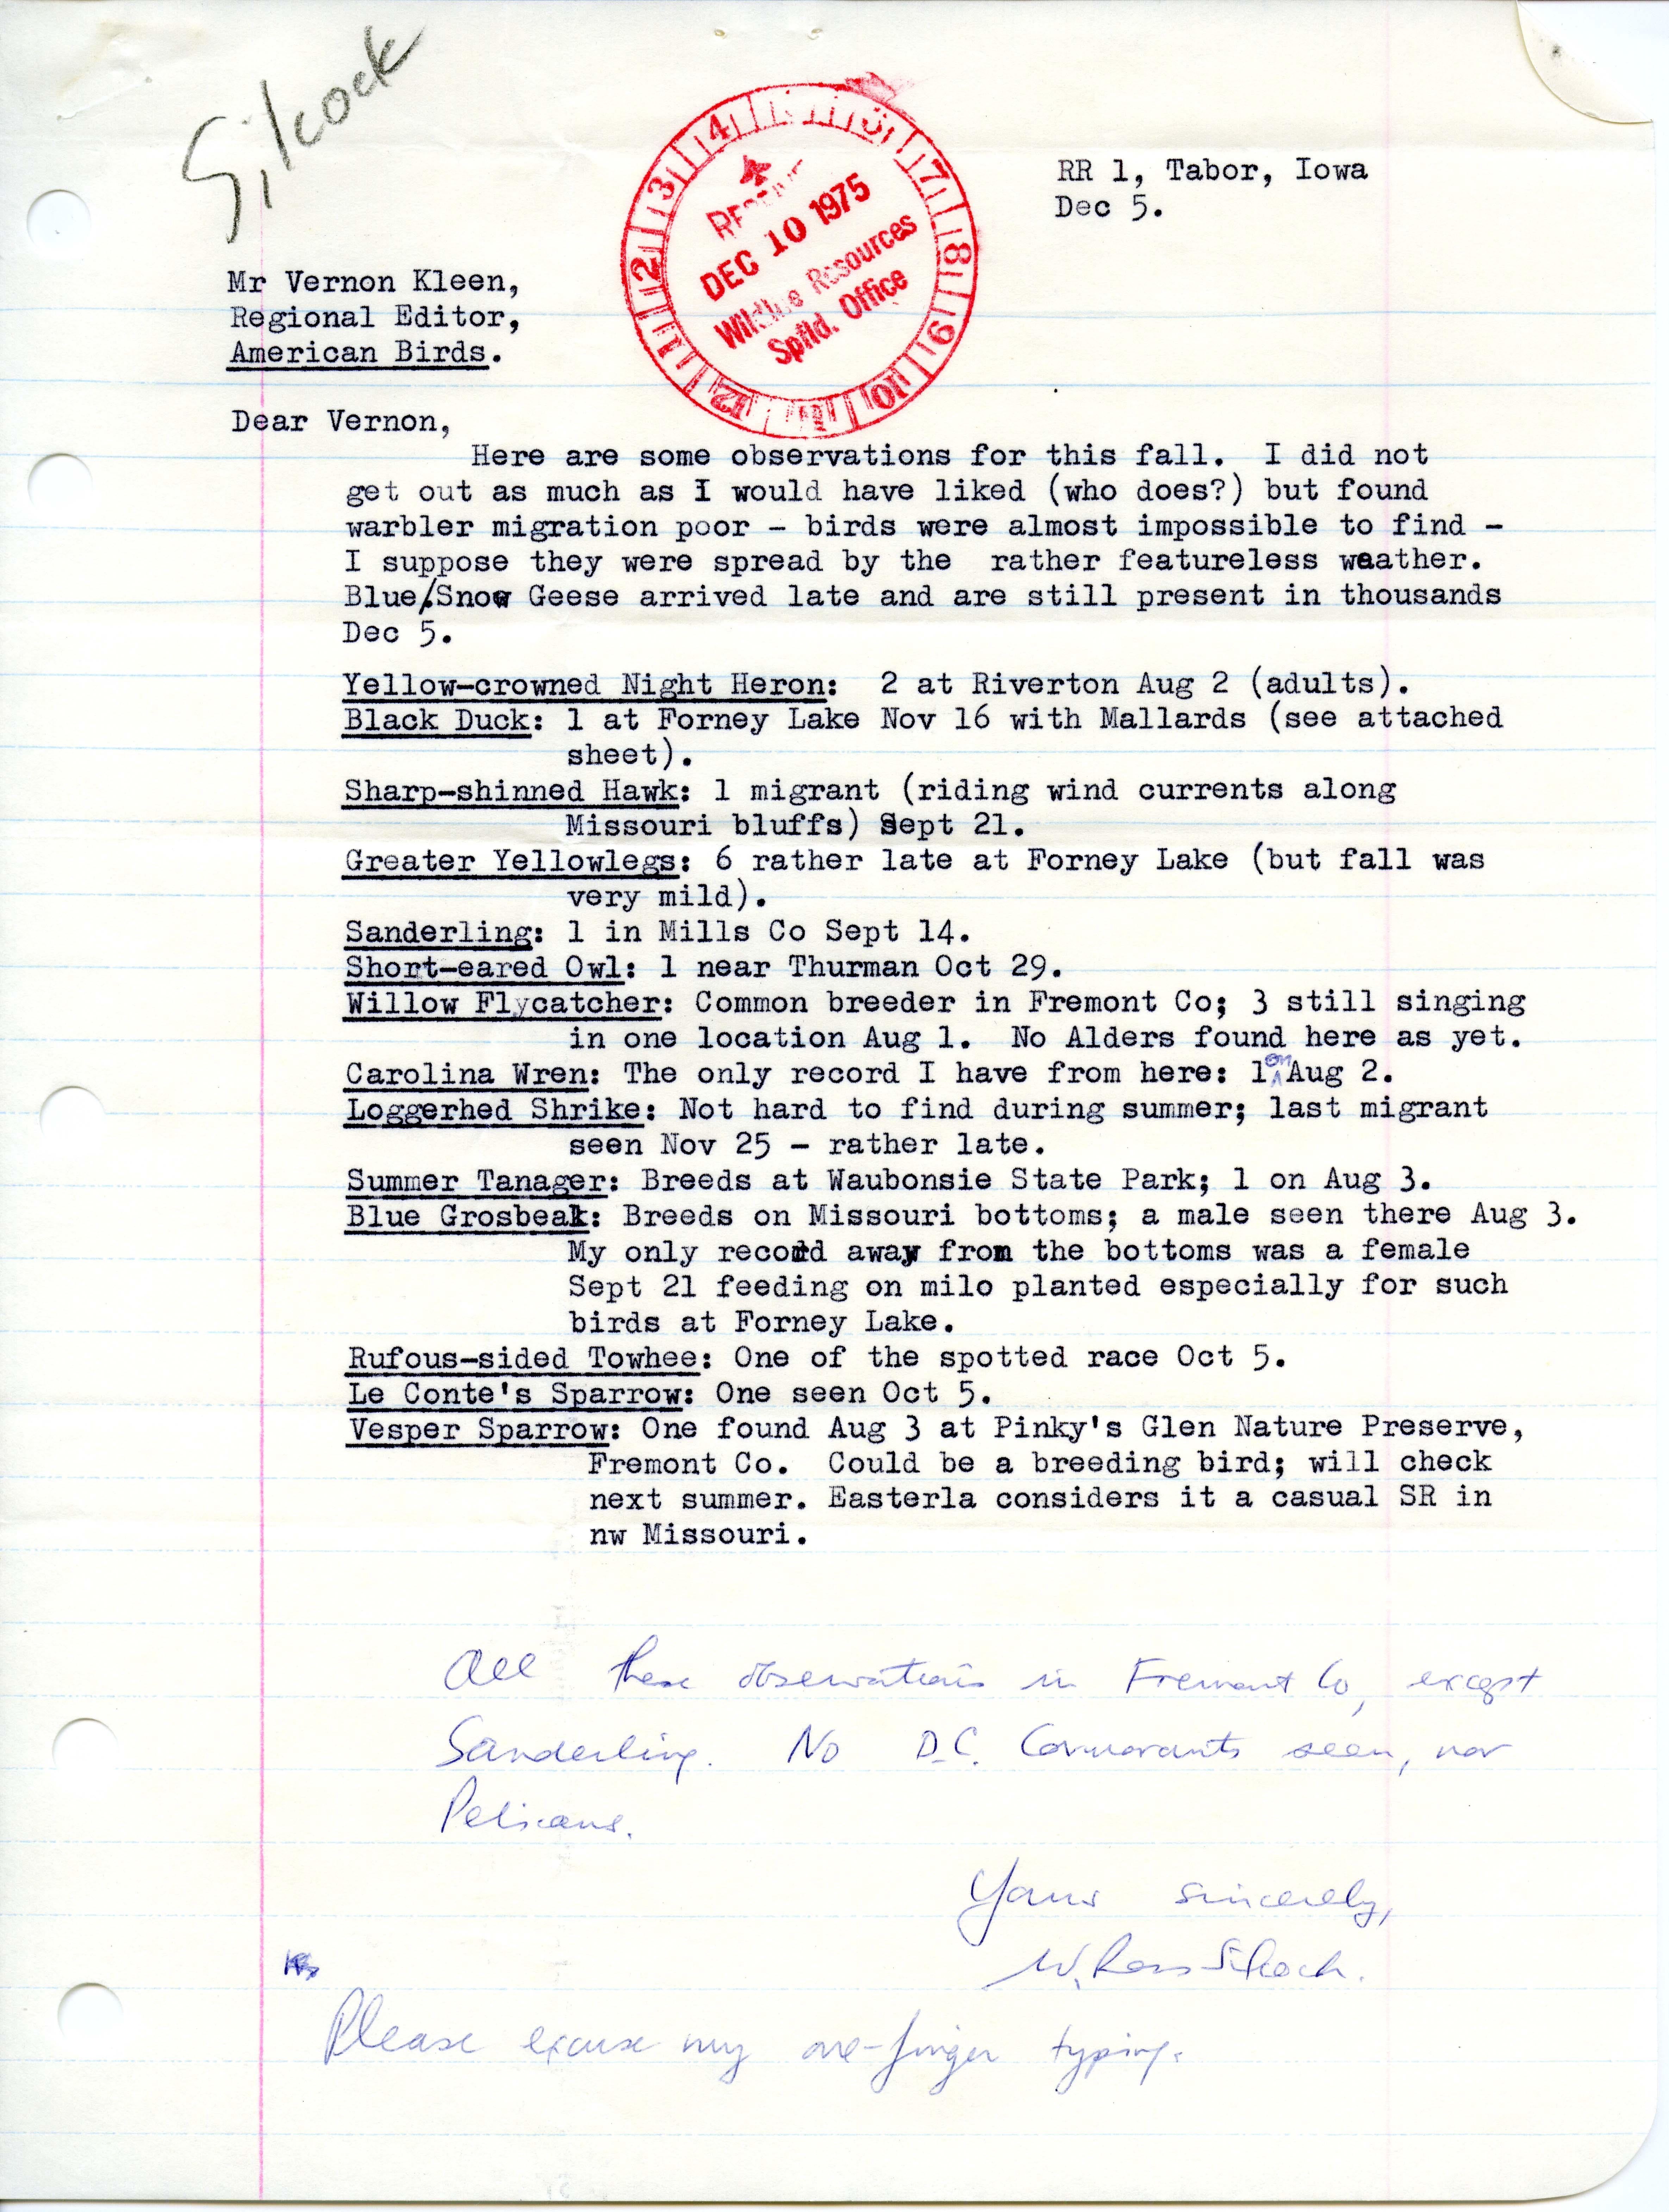 W. Ross Silcock letter to Vernon M. Kleen regarding fall migration 1975, December 5, 1975